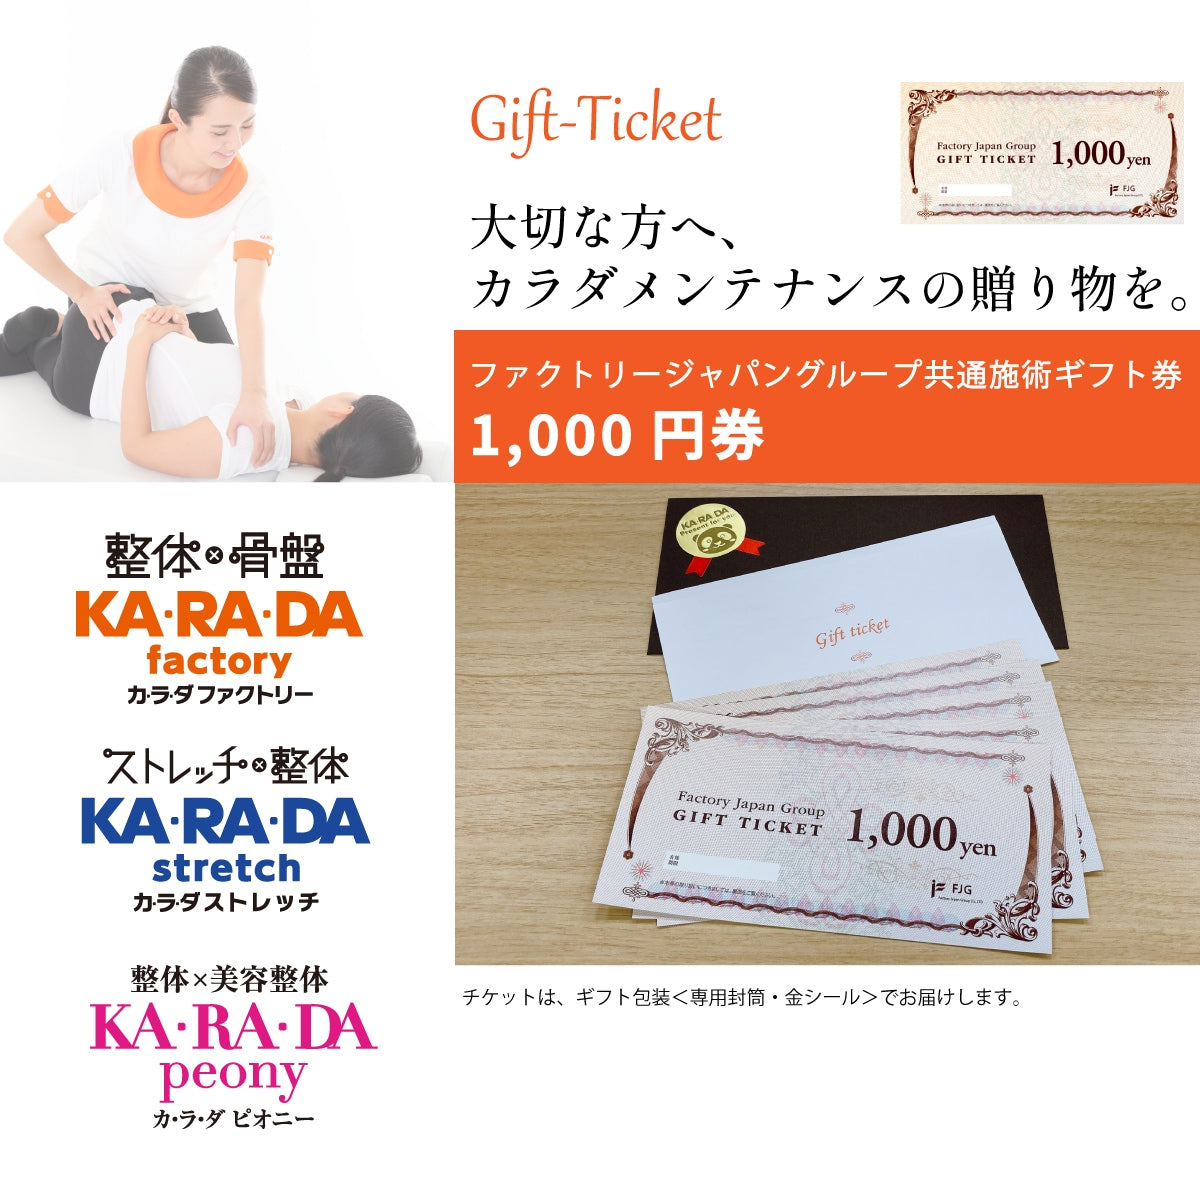 ファクトリージャパングループ共通施術ギフト券「1,000円券」